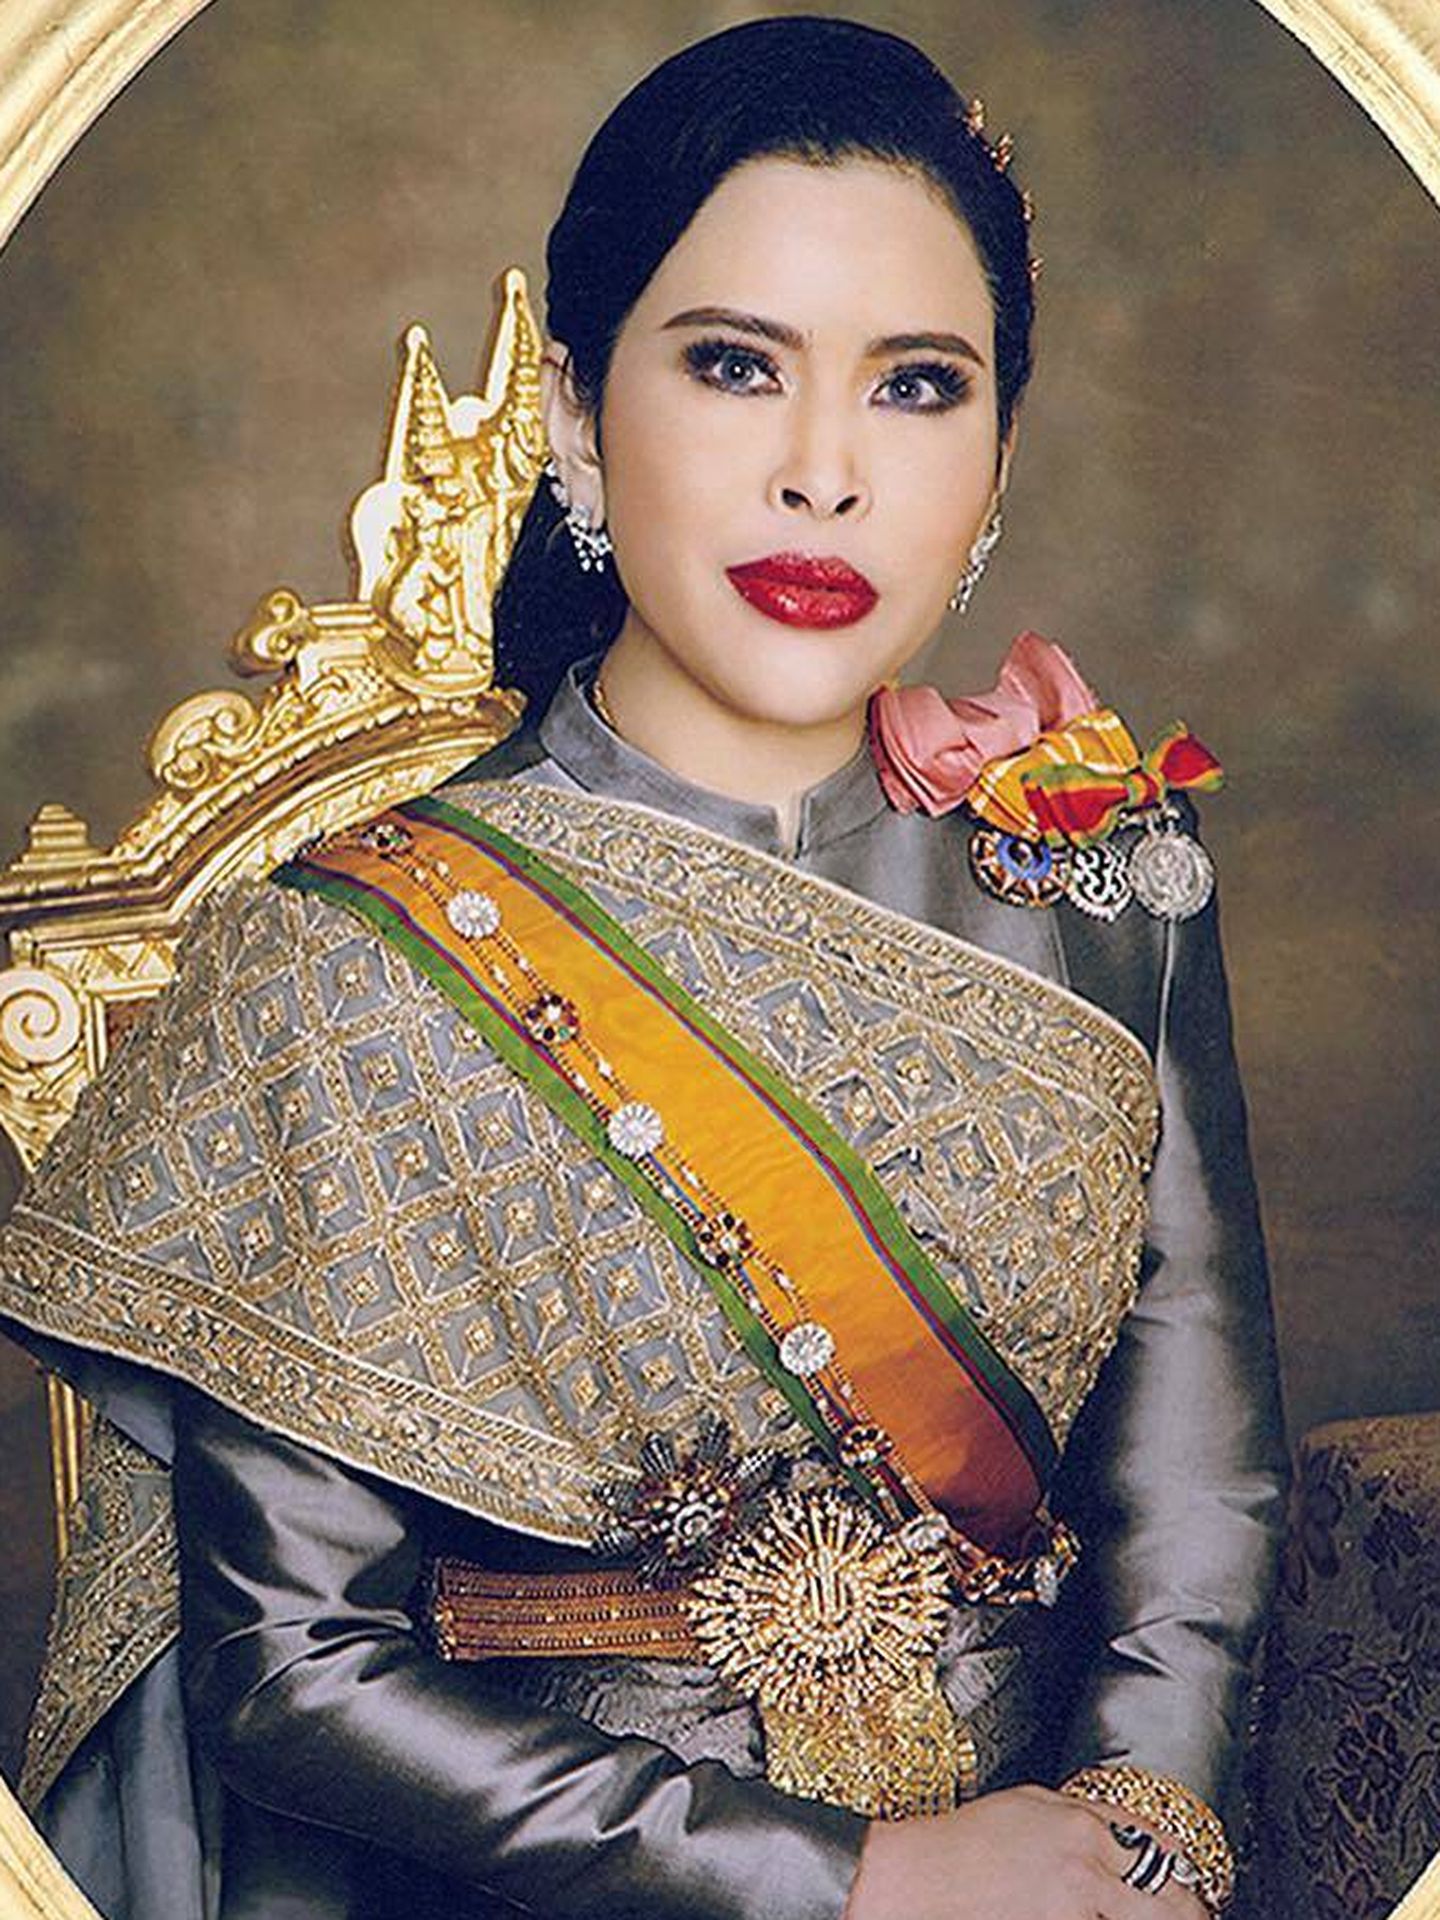 Retrato de la princesa Chulabhorn de Tailandia. (IG thairoyalfamily)